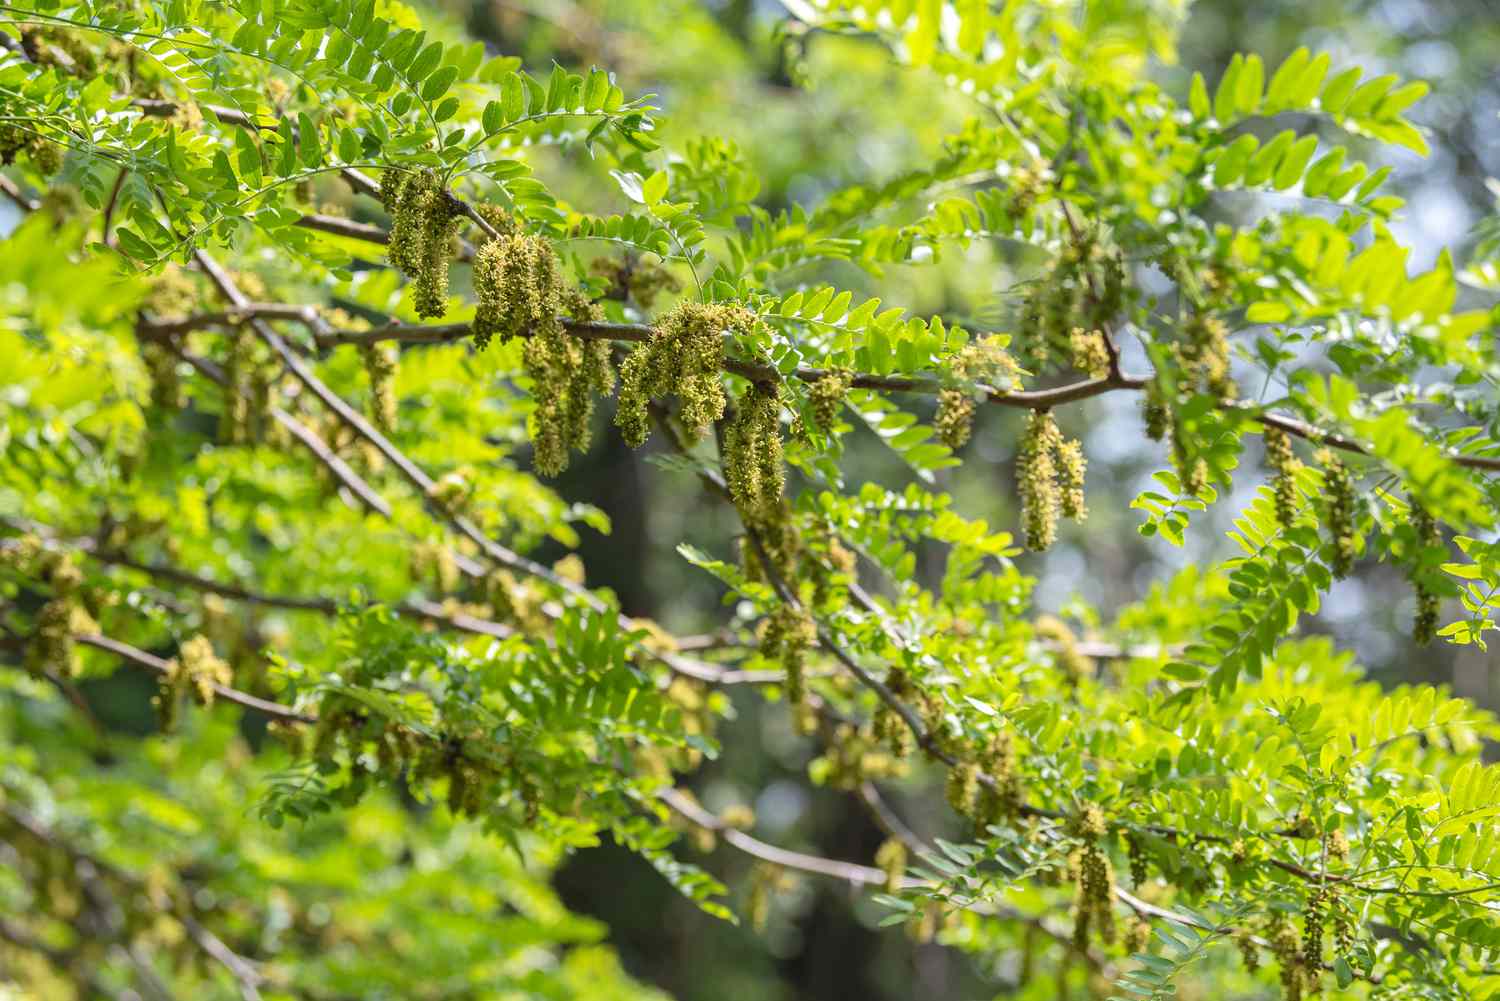 Sunburst-Honigbaumzweige mit leuchtend grünen, farnartigen Blättern und gelbgrünen Rispen hängen 